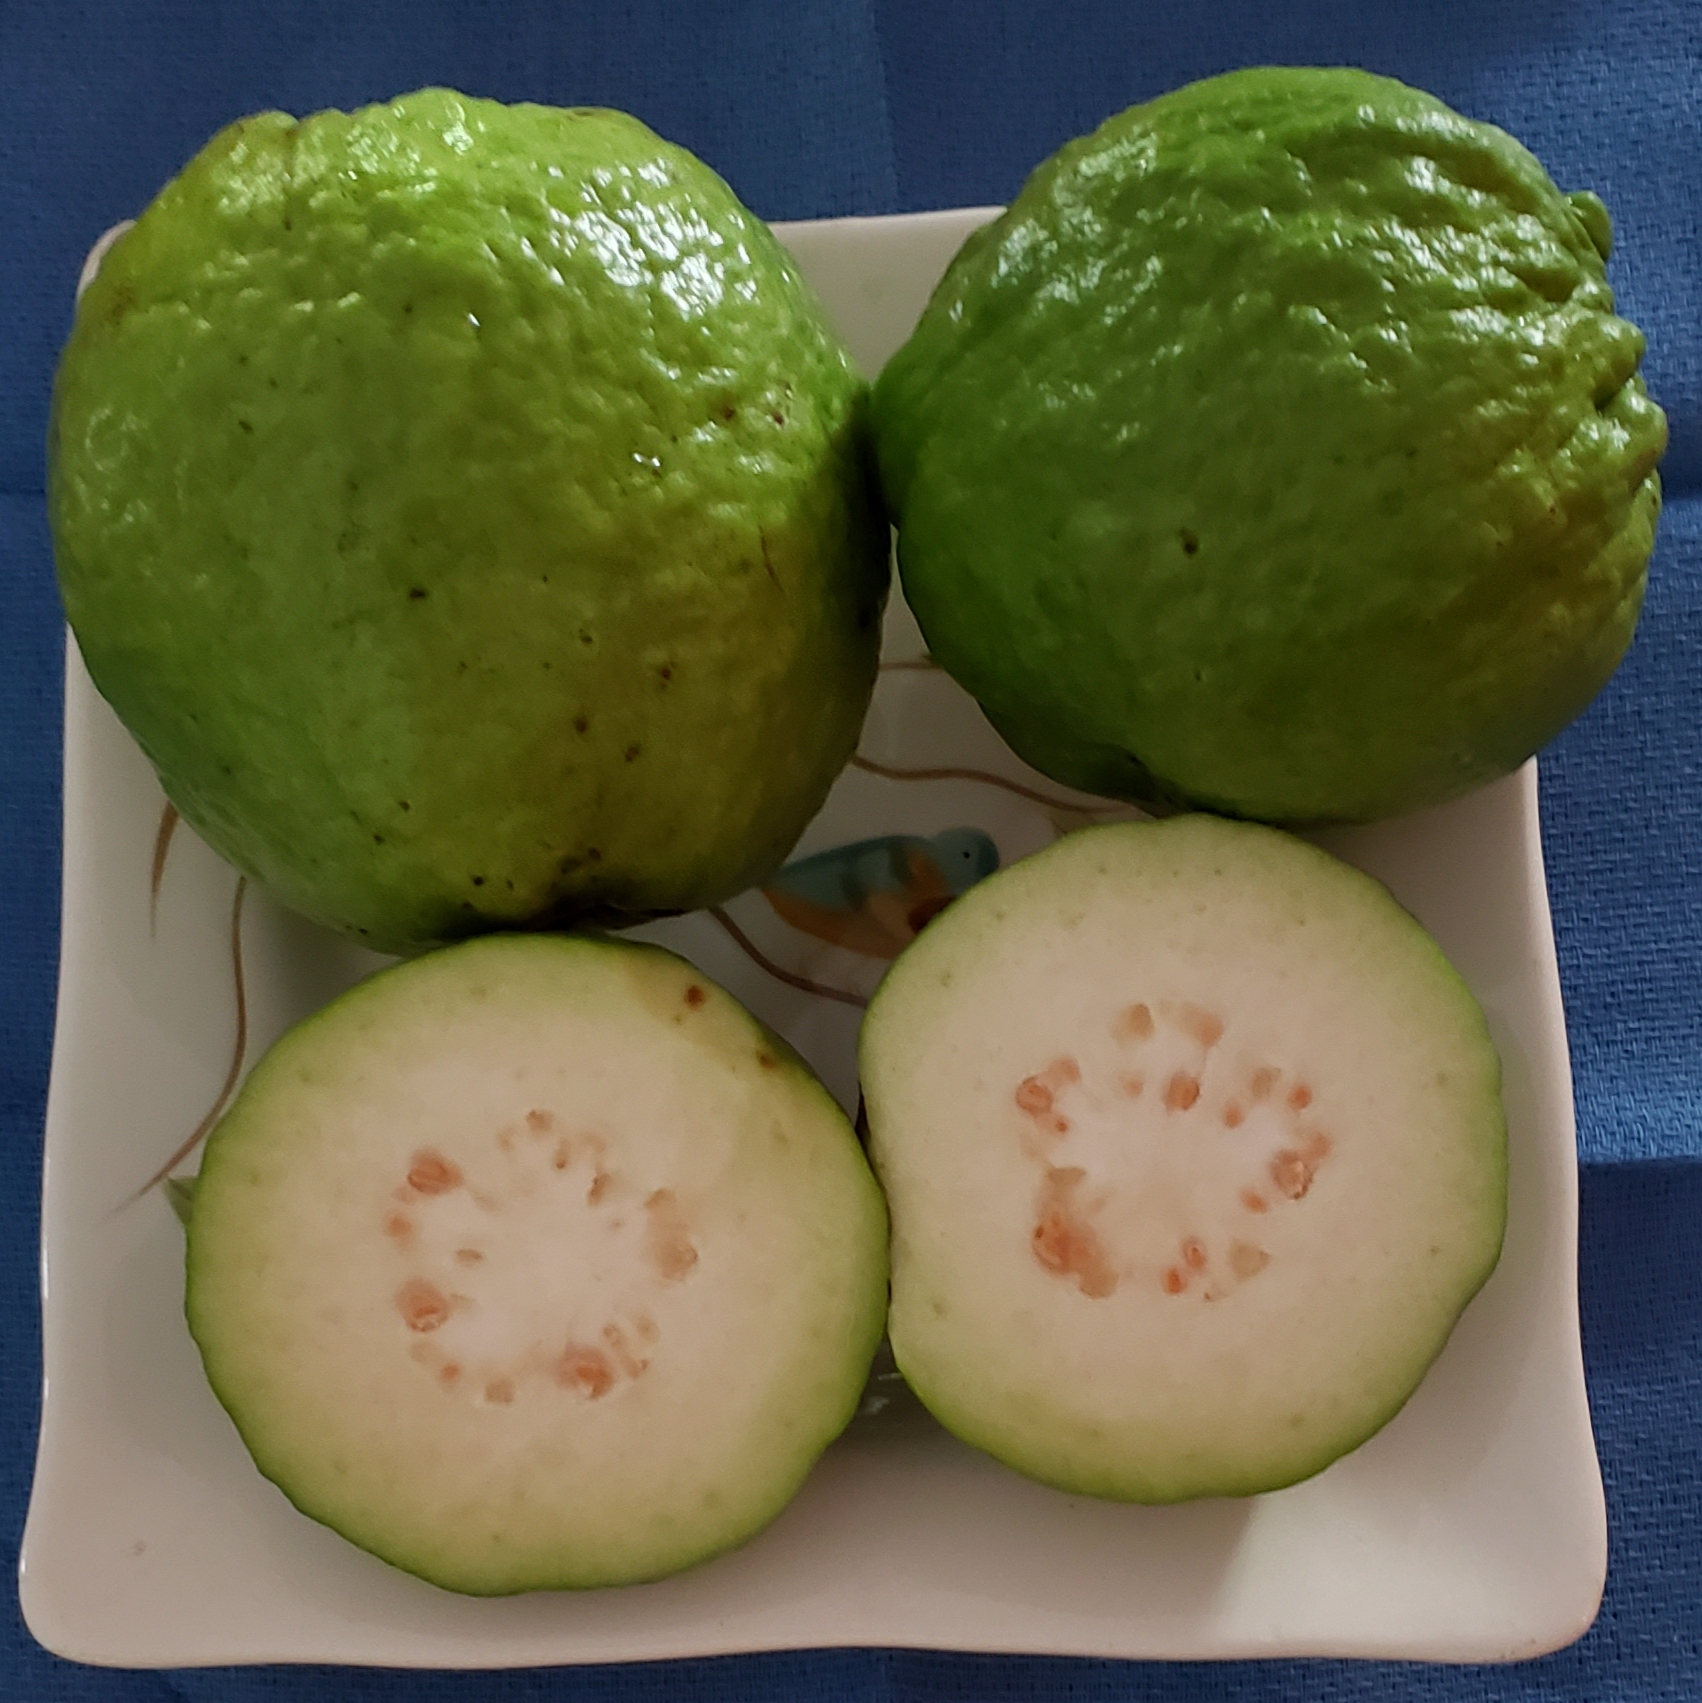 GUAVA (Psidium guajava ) - variety: white Thai guava